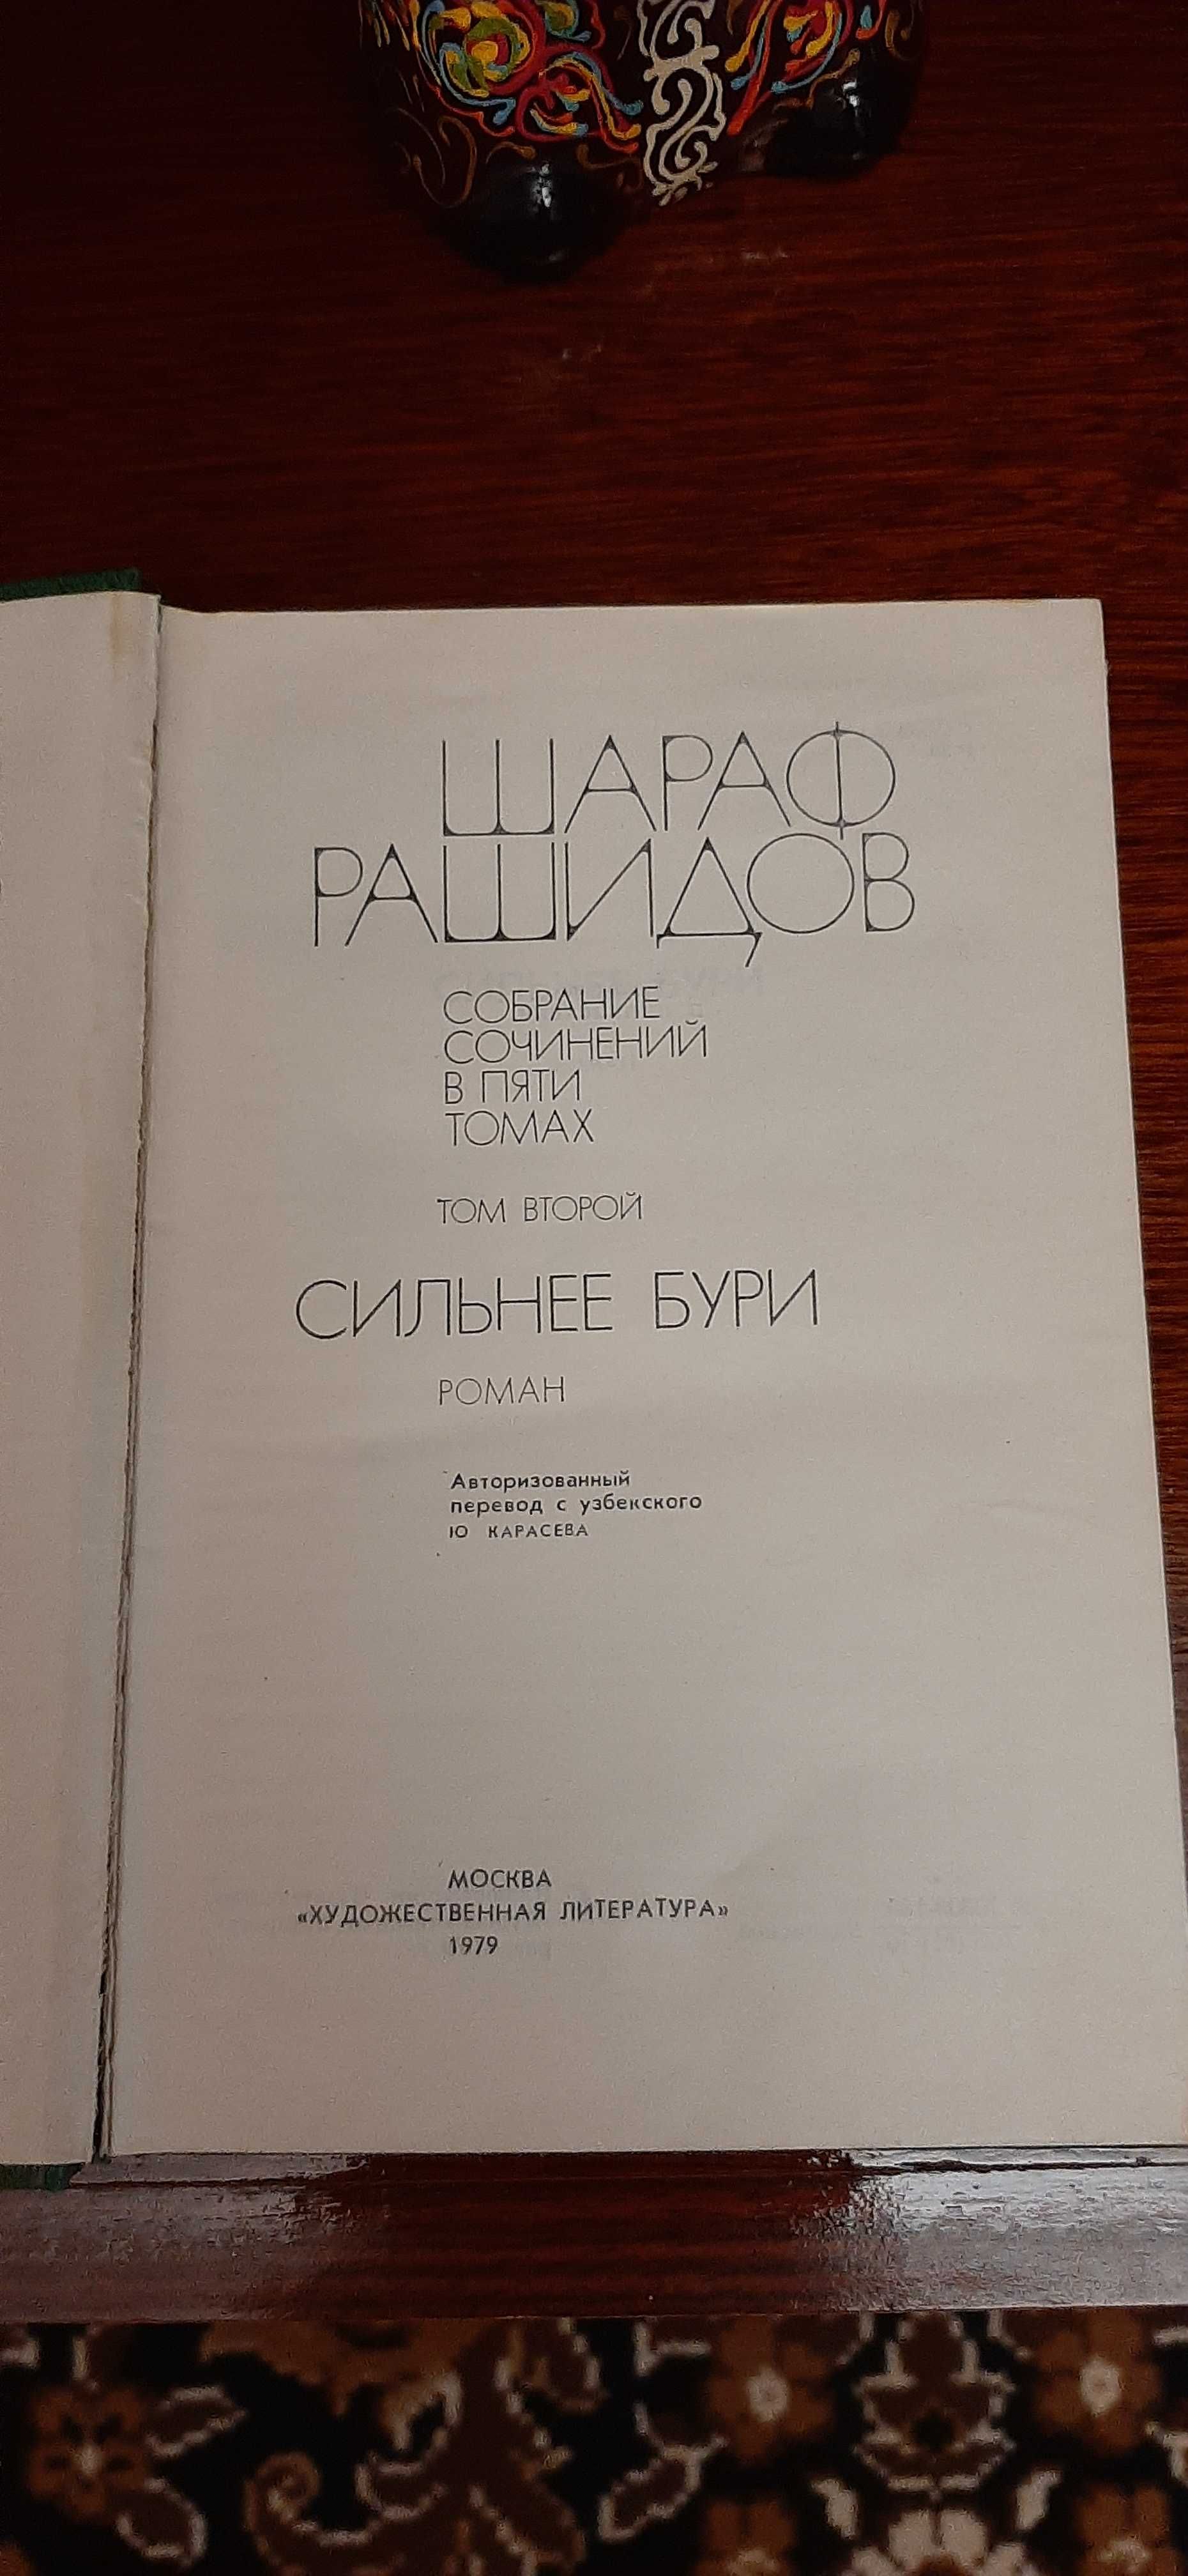 Книги Шарафа Рашидова